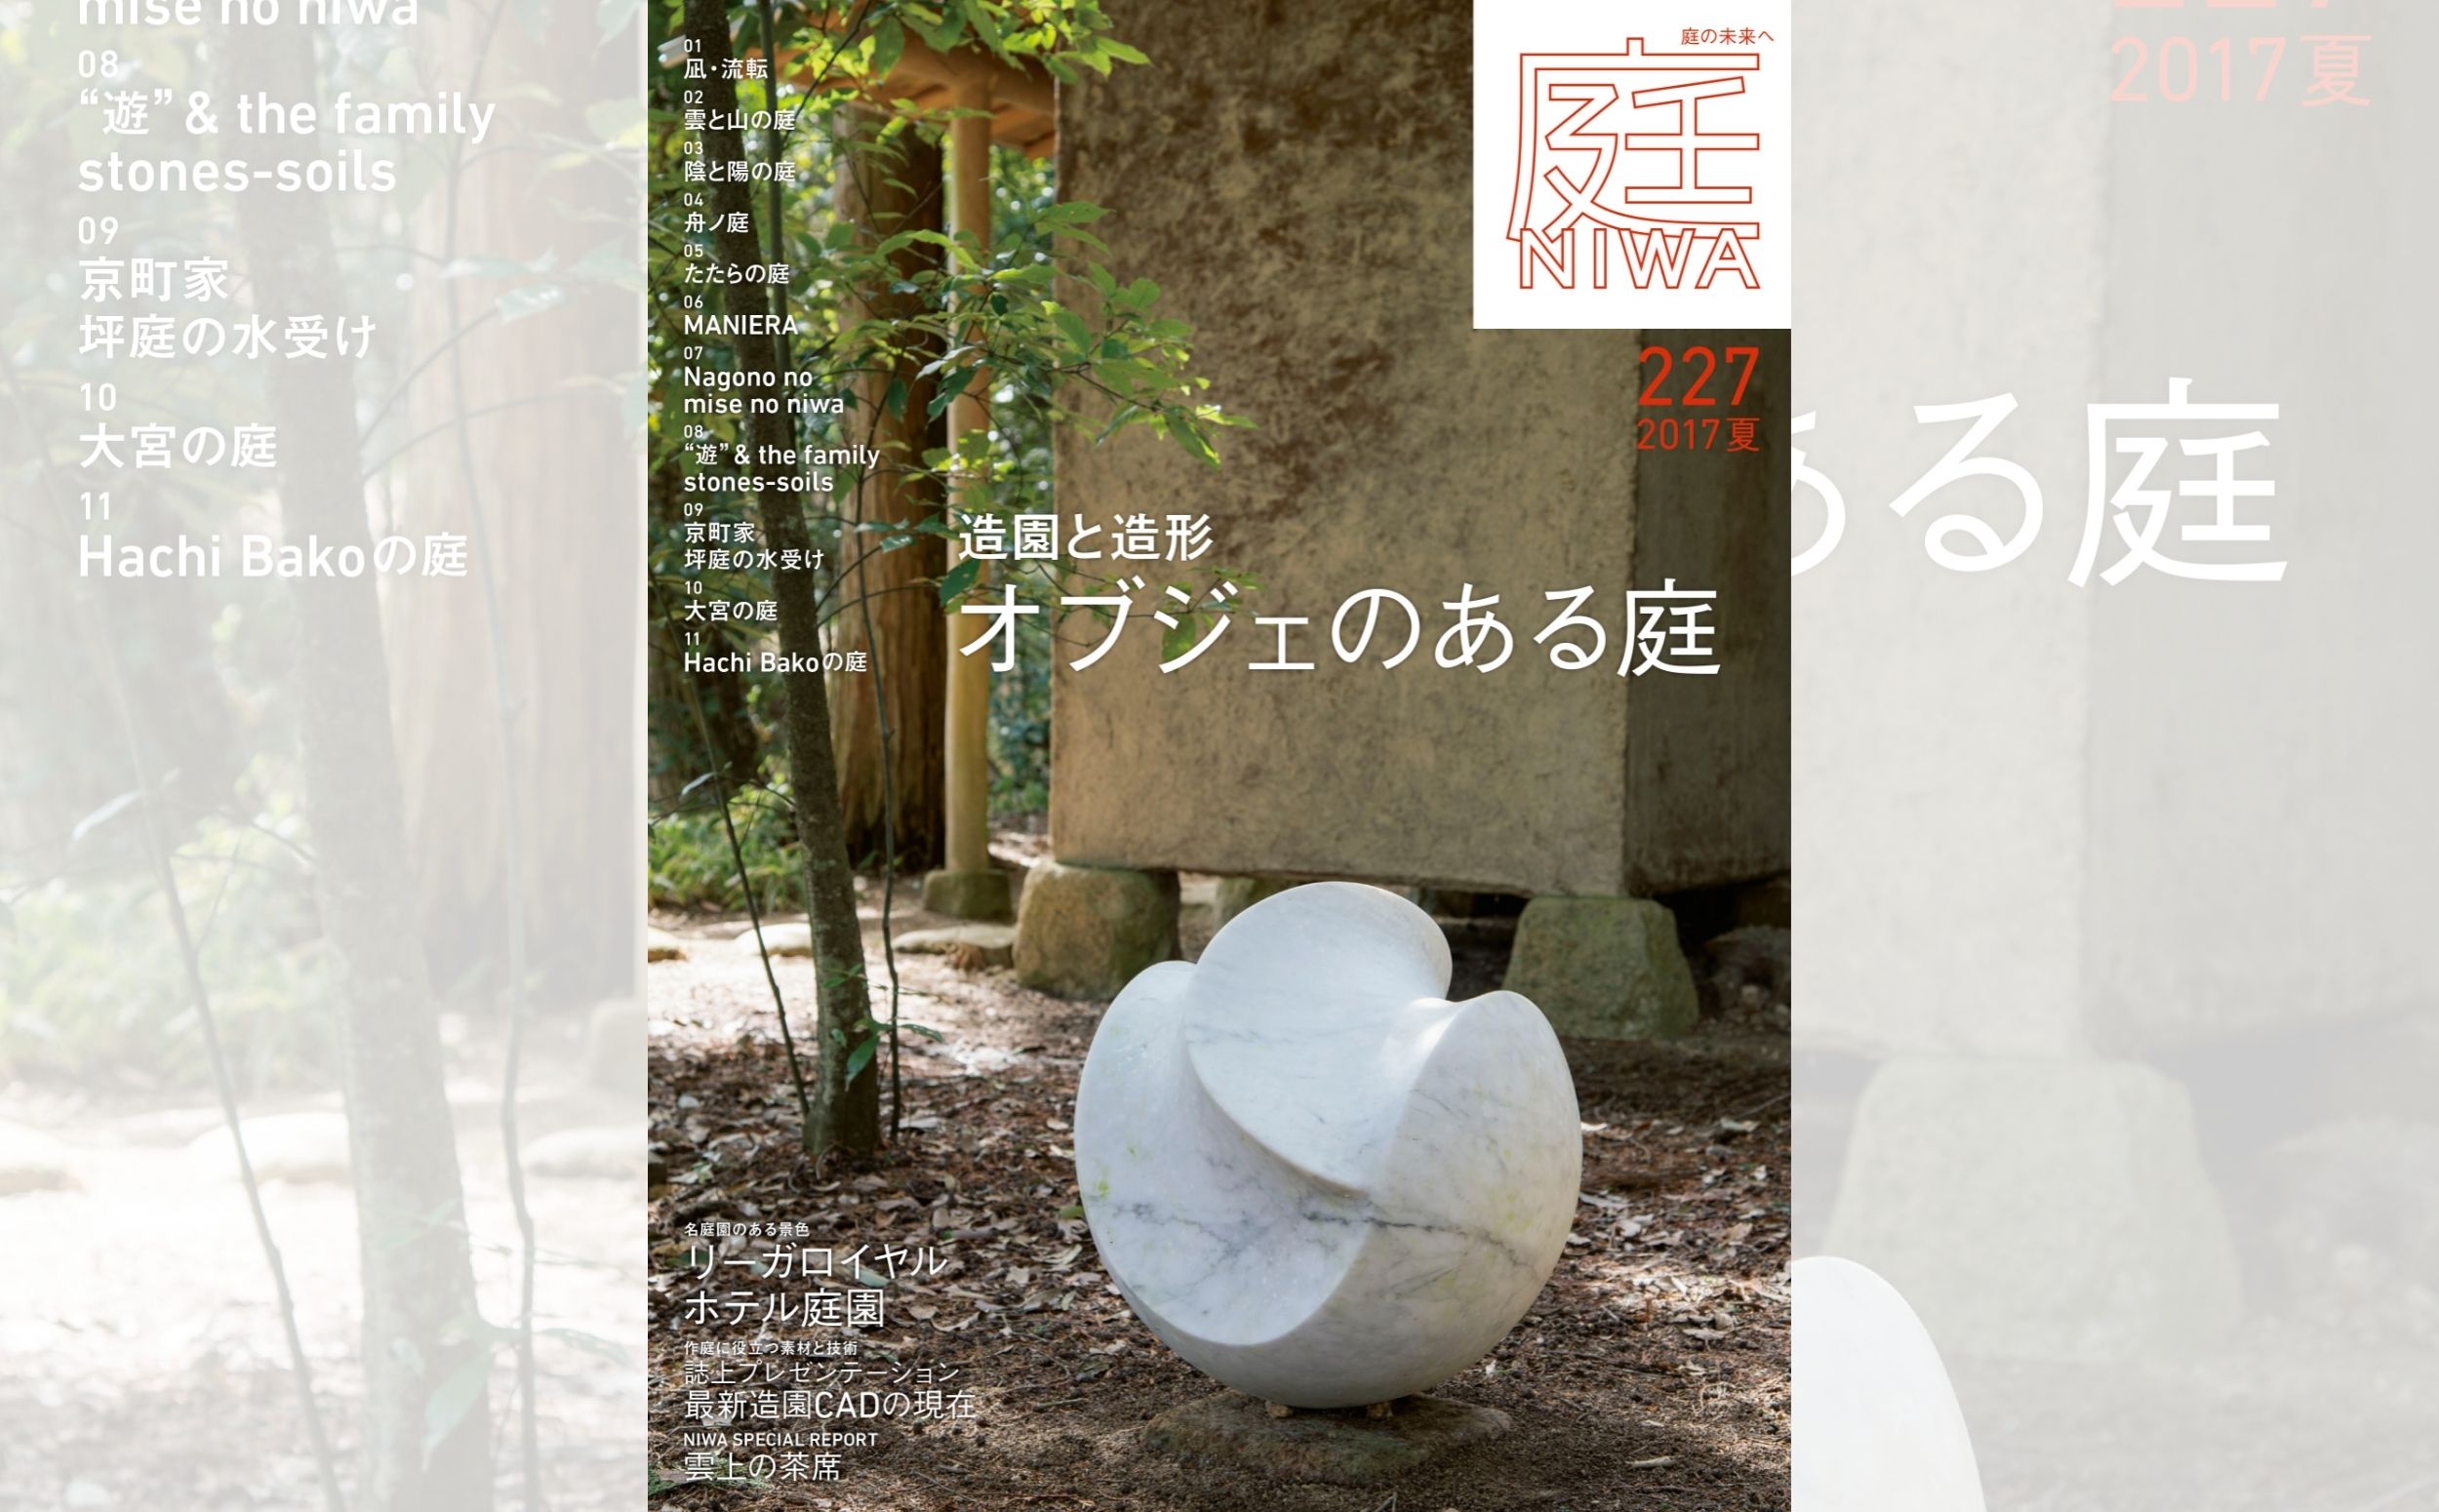 庭NIWA No.227 2017夏『造園と造形 オブジェのある庭』 | 雑誌「庭NIWA」